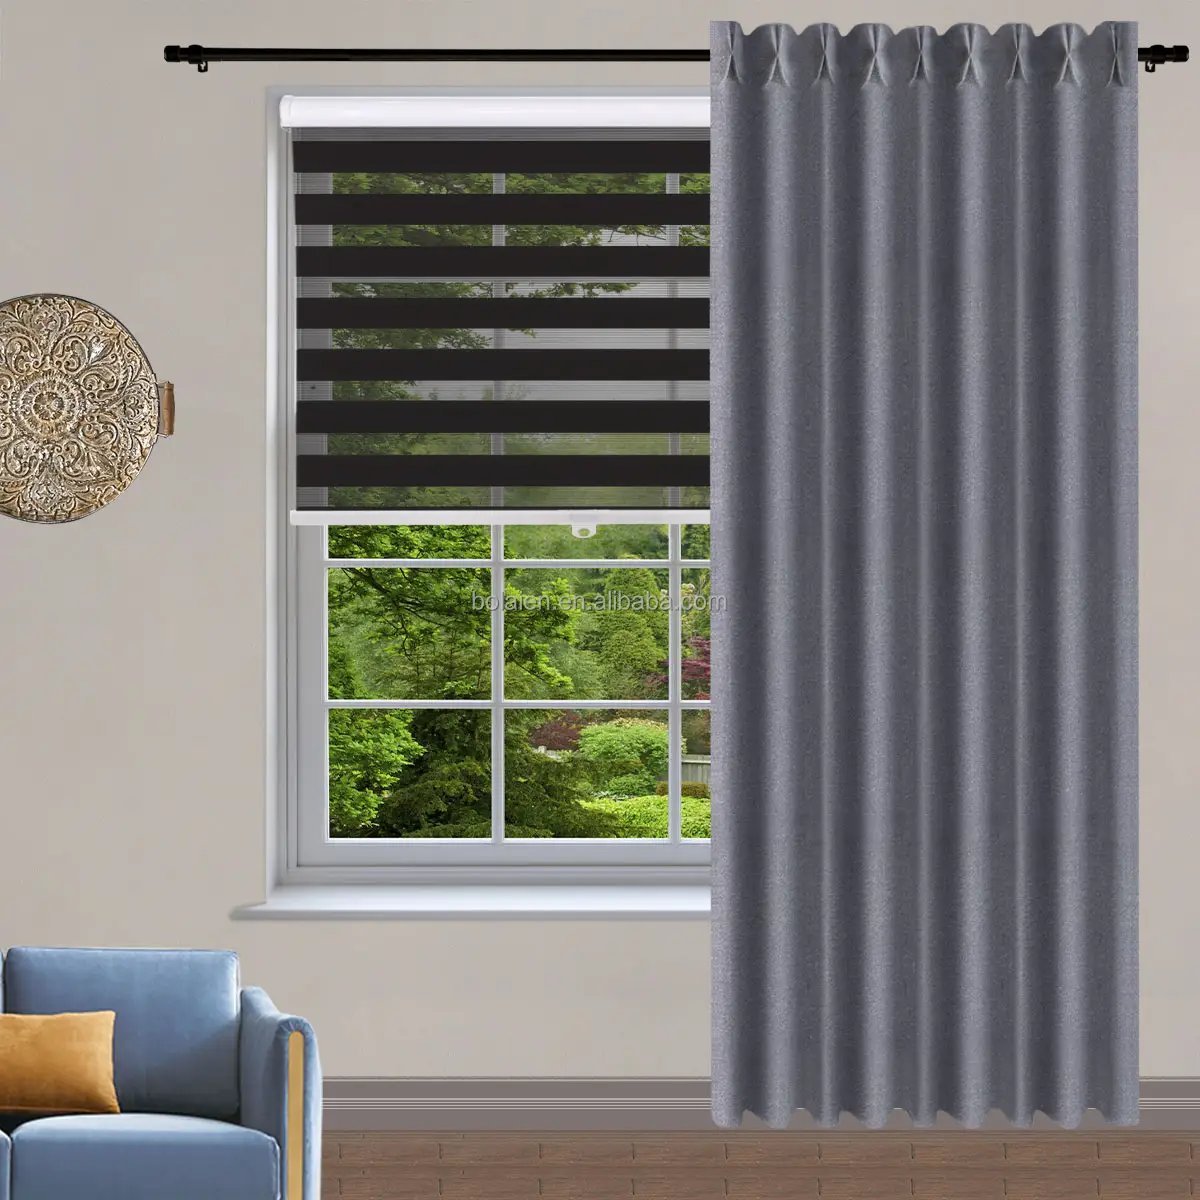 Cortinas de janela e persianas, cortinas sem fio de tecido blackout para decoração de casa